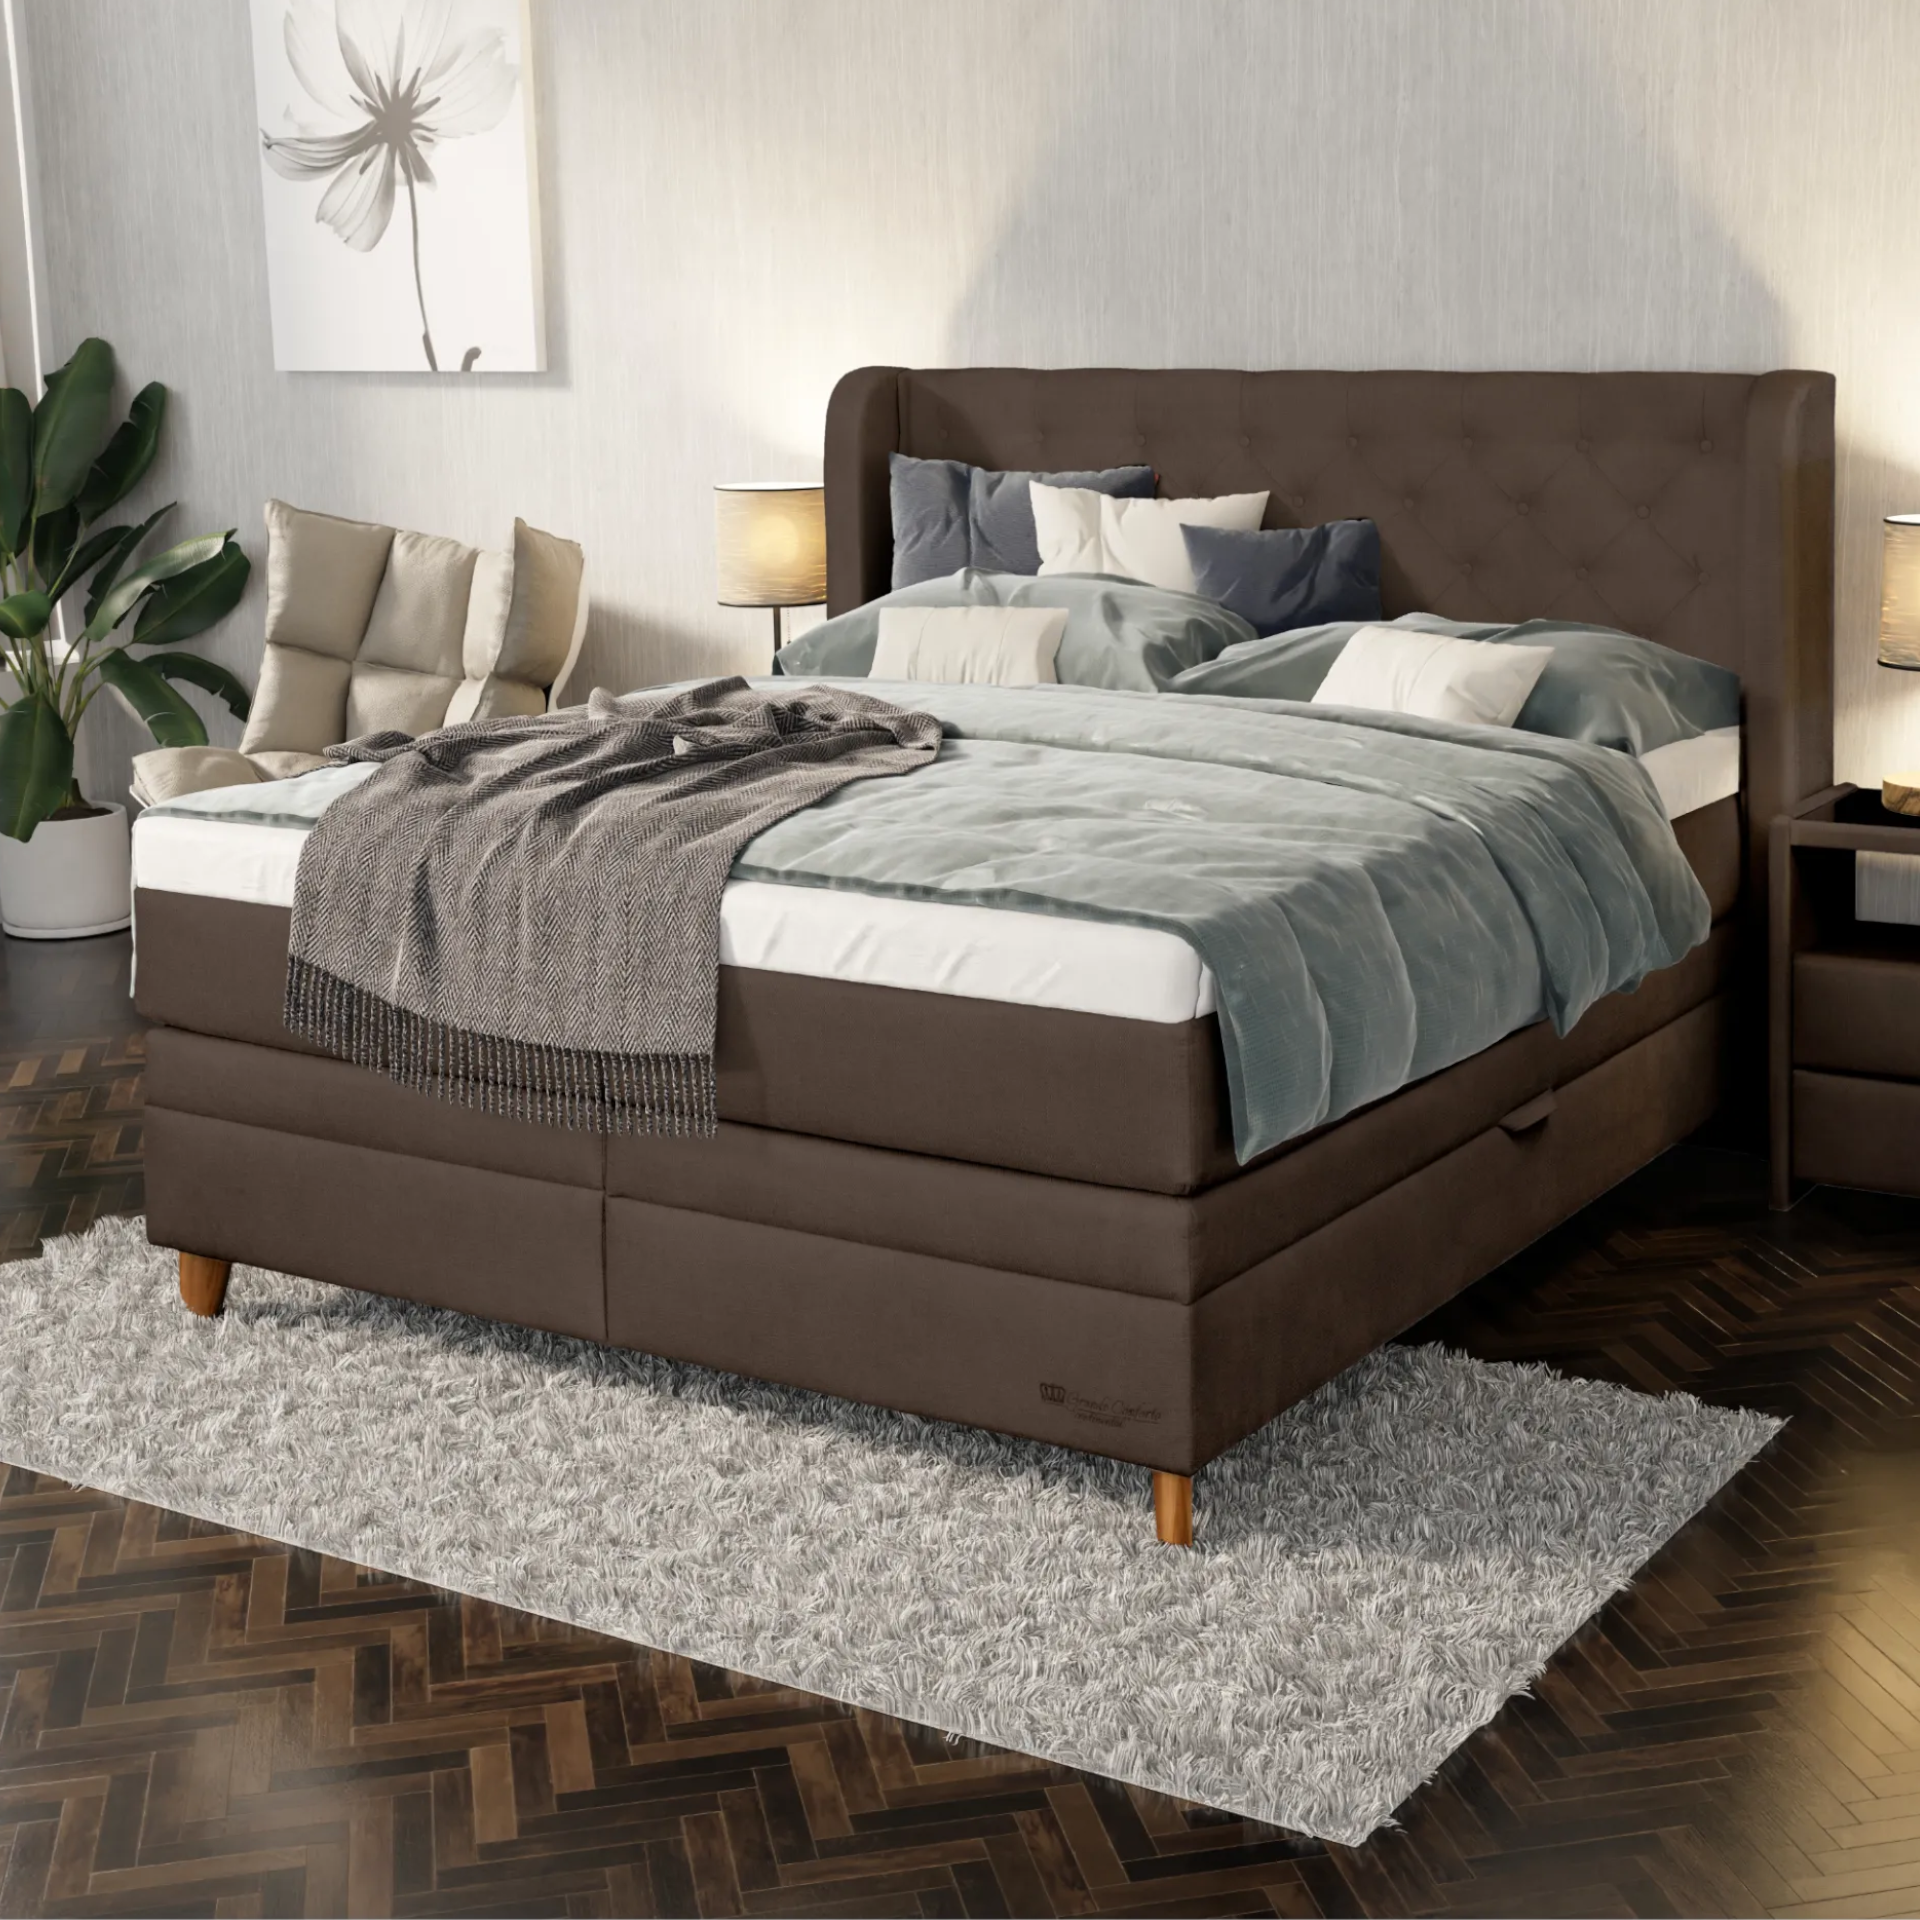 Hnedá boxspringová posteľ s vysokým čelom s dekoratívnym prešívaním a gombíkmi